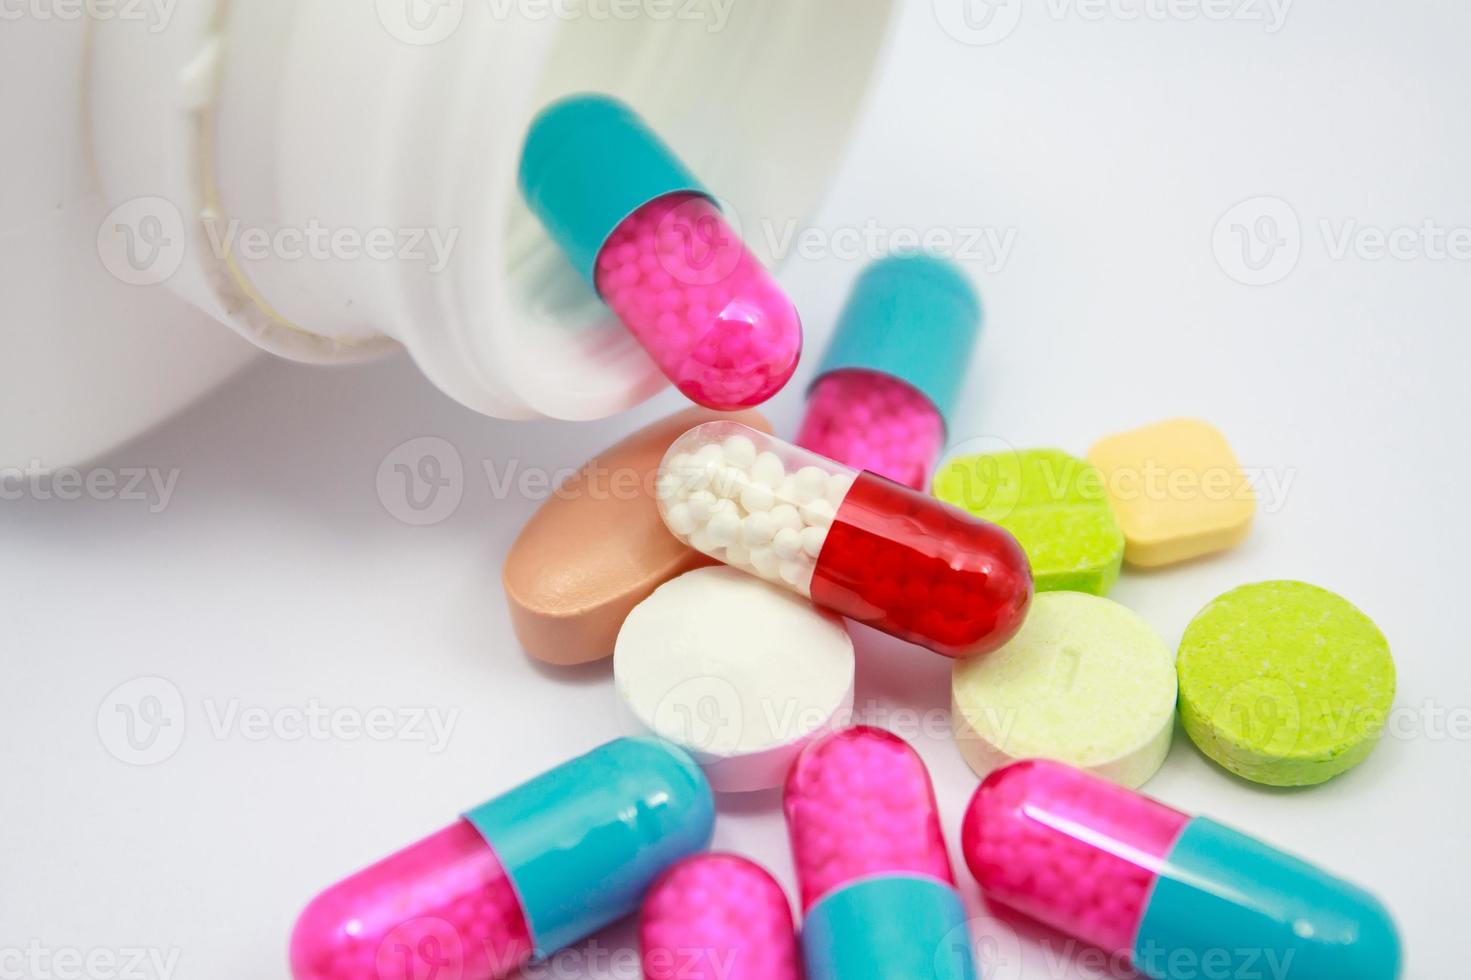 pillole colorate, compresse e capsule su sfondo bianco foto